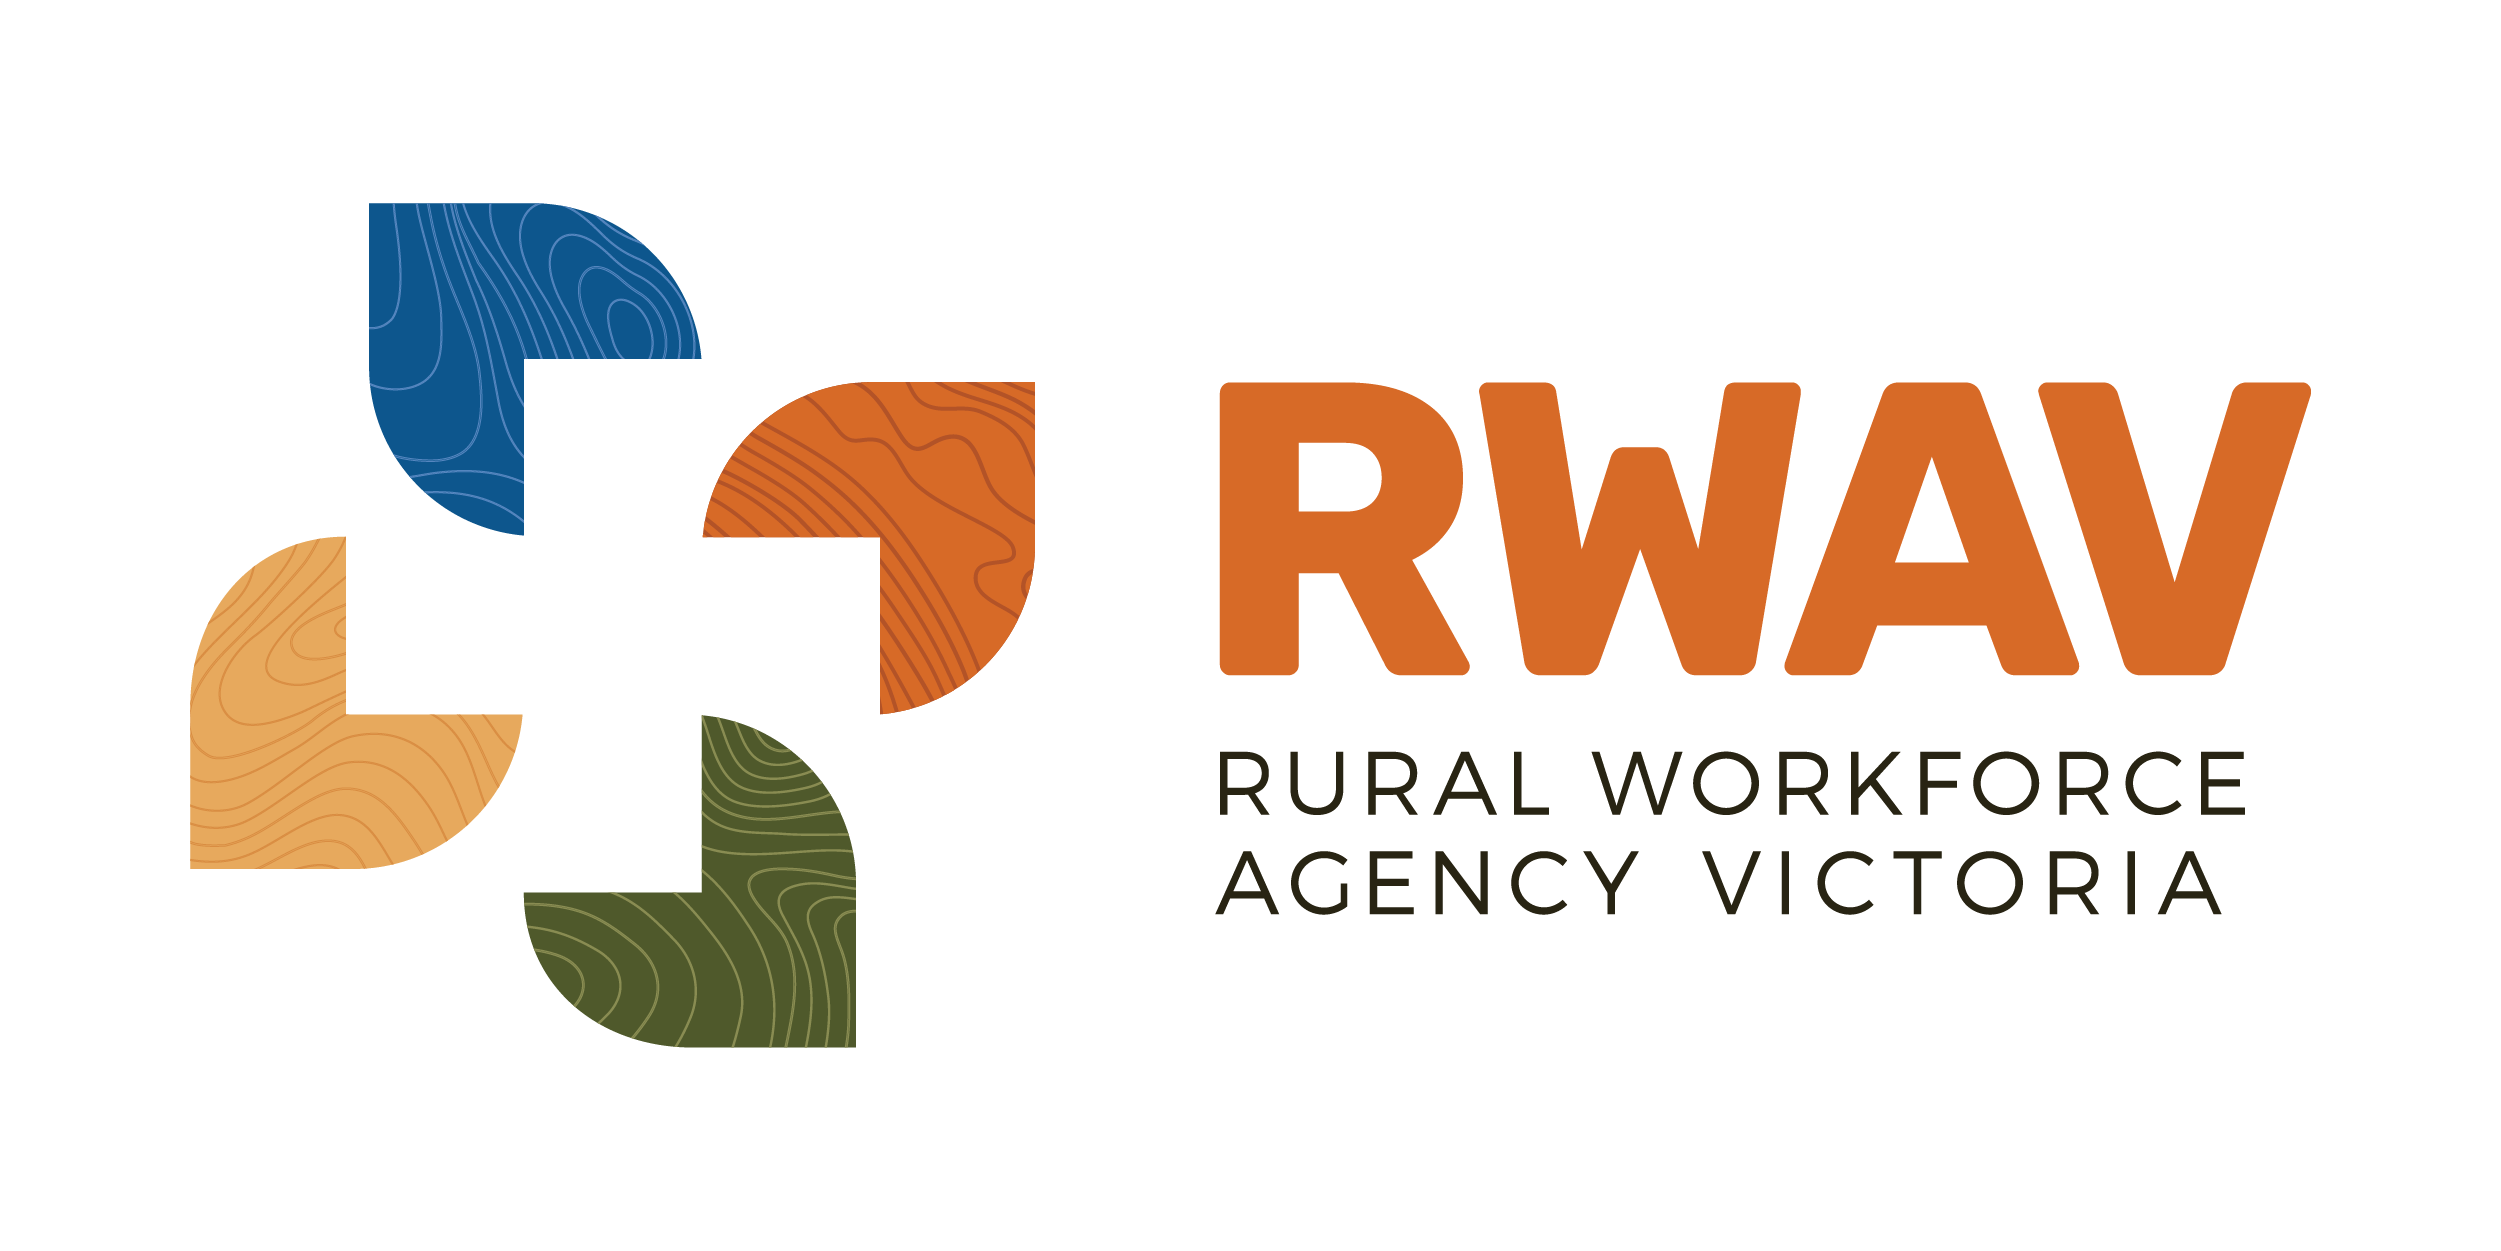 Rural Workforce Agency Victoria 